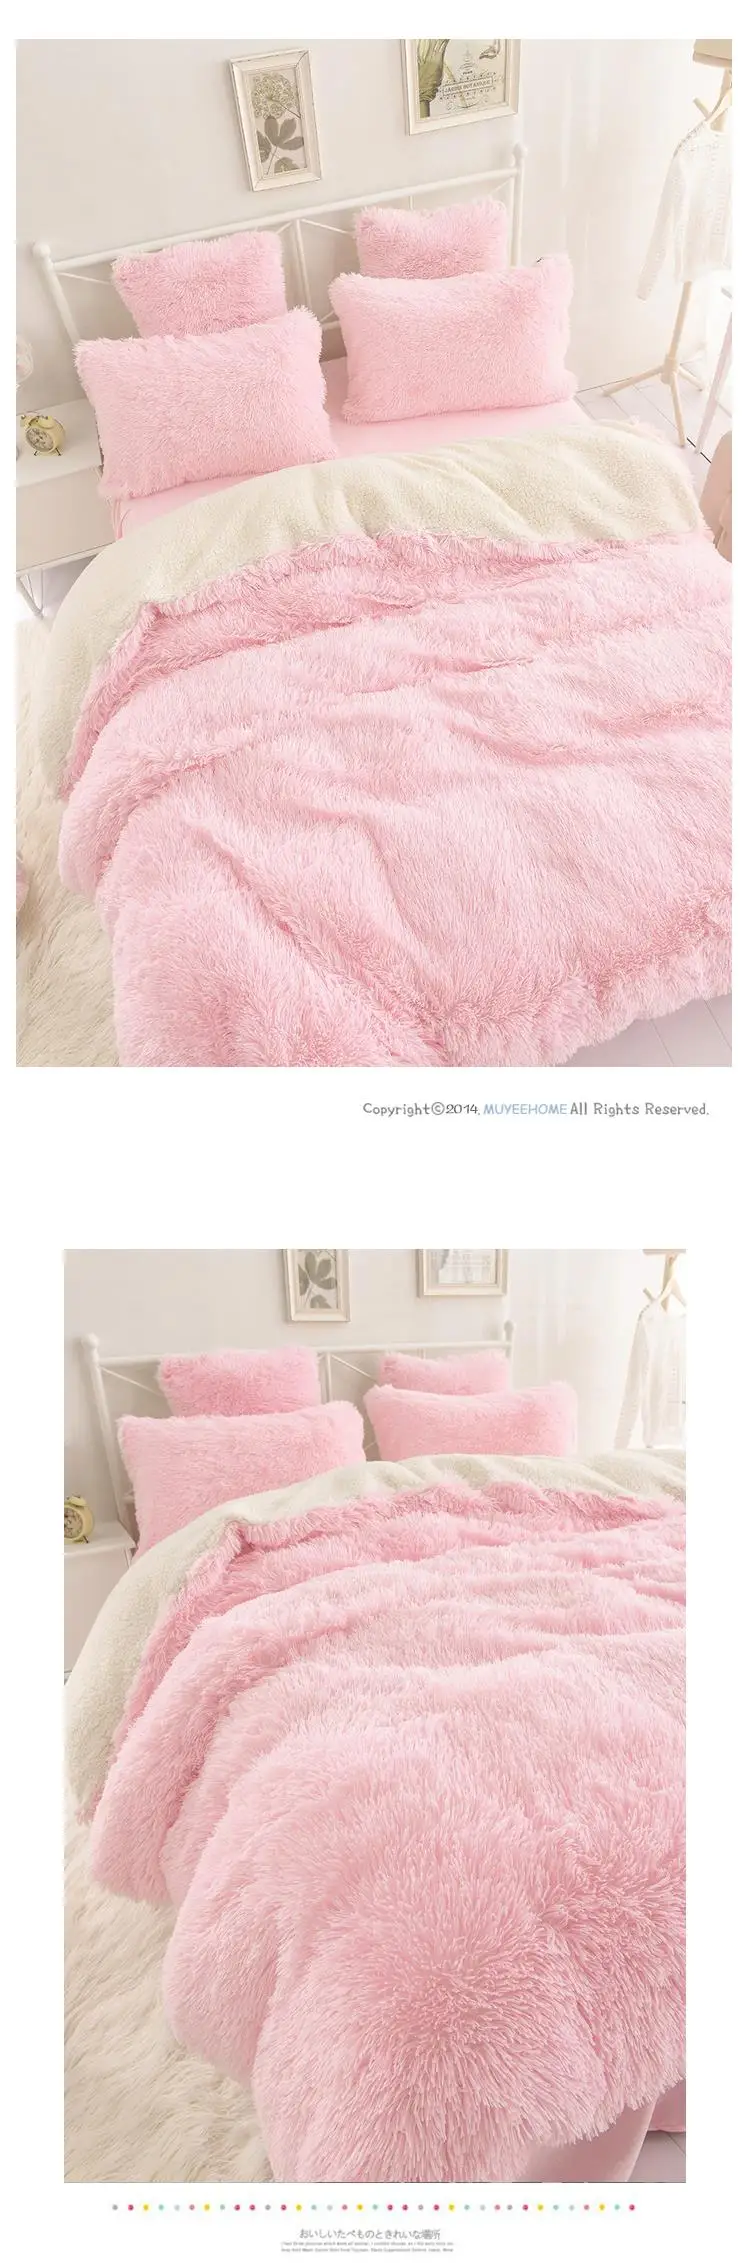 Новые корейские постельные комплекты, красивый бархатный постельный мешок, овечья шерсть чистый цвет Falbala кровать юбка